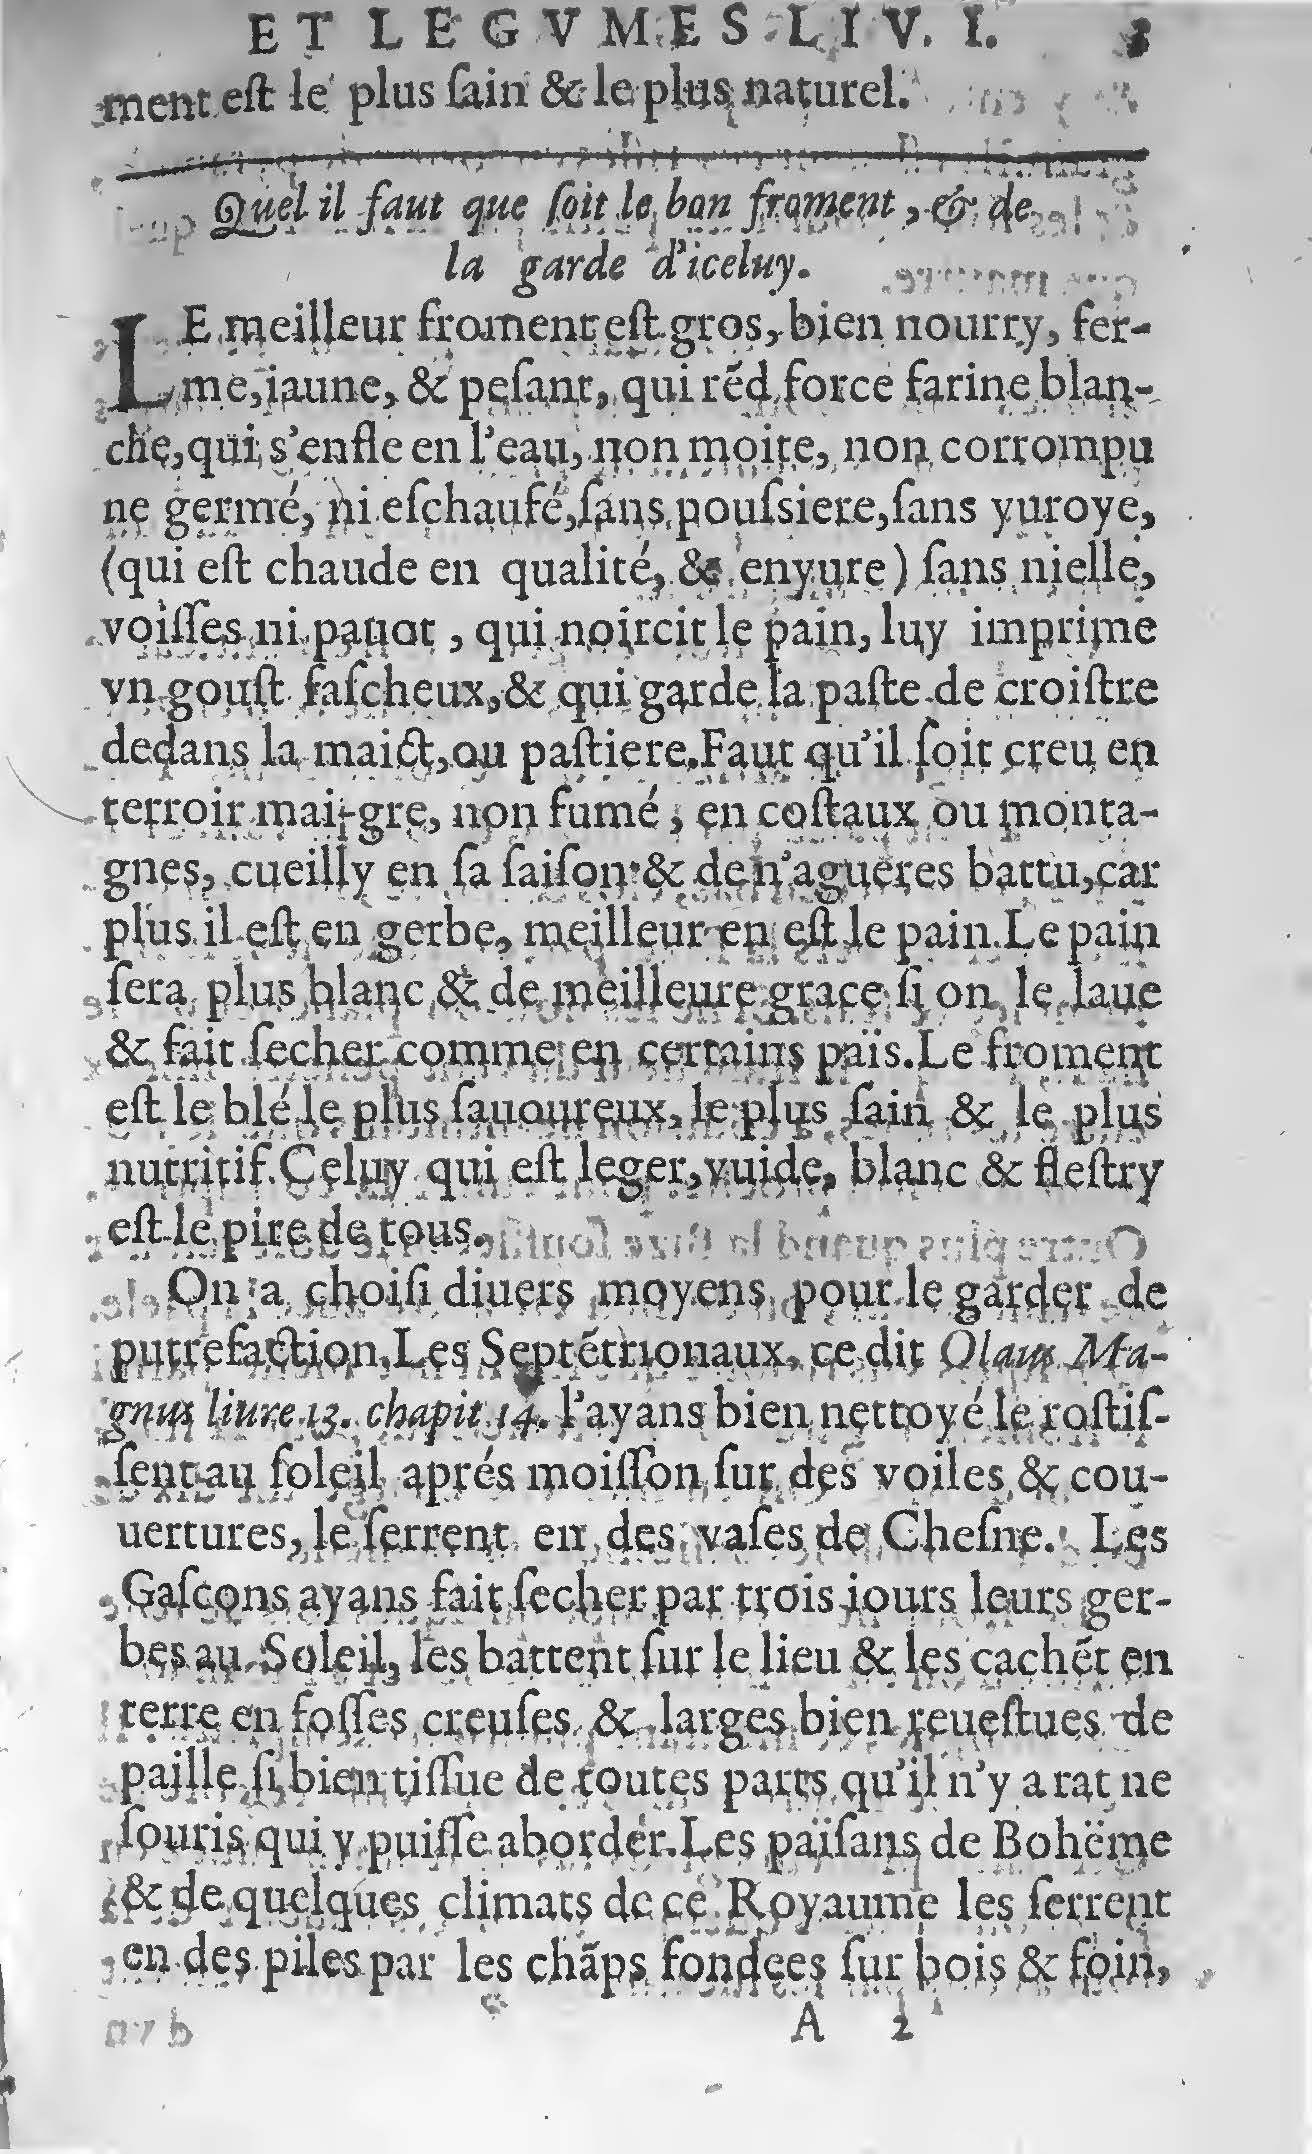 1607 Étienne Servain et Jean Antoine Huguetan - Trésor de santé ou ménage de la vie humaine - BIU Santé_Page_023.jpg